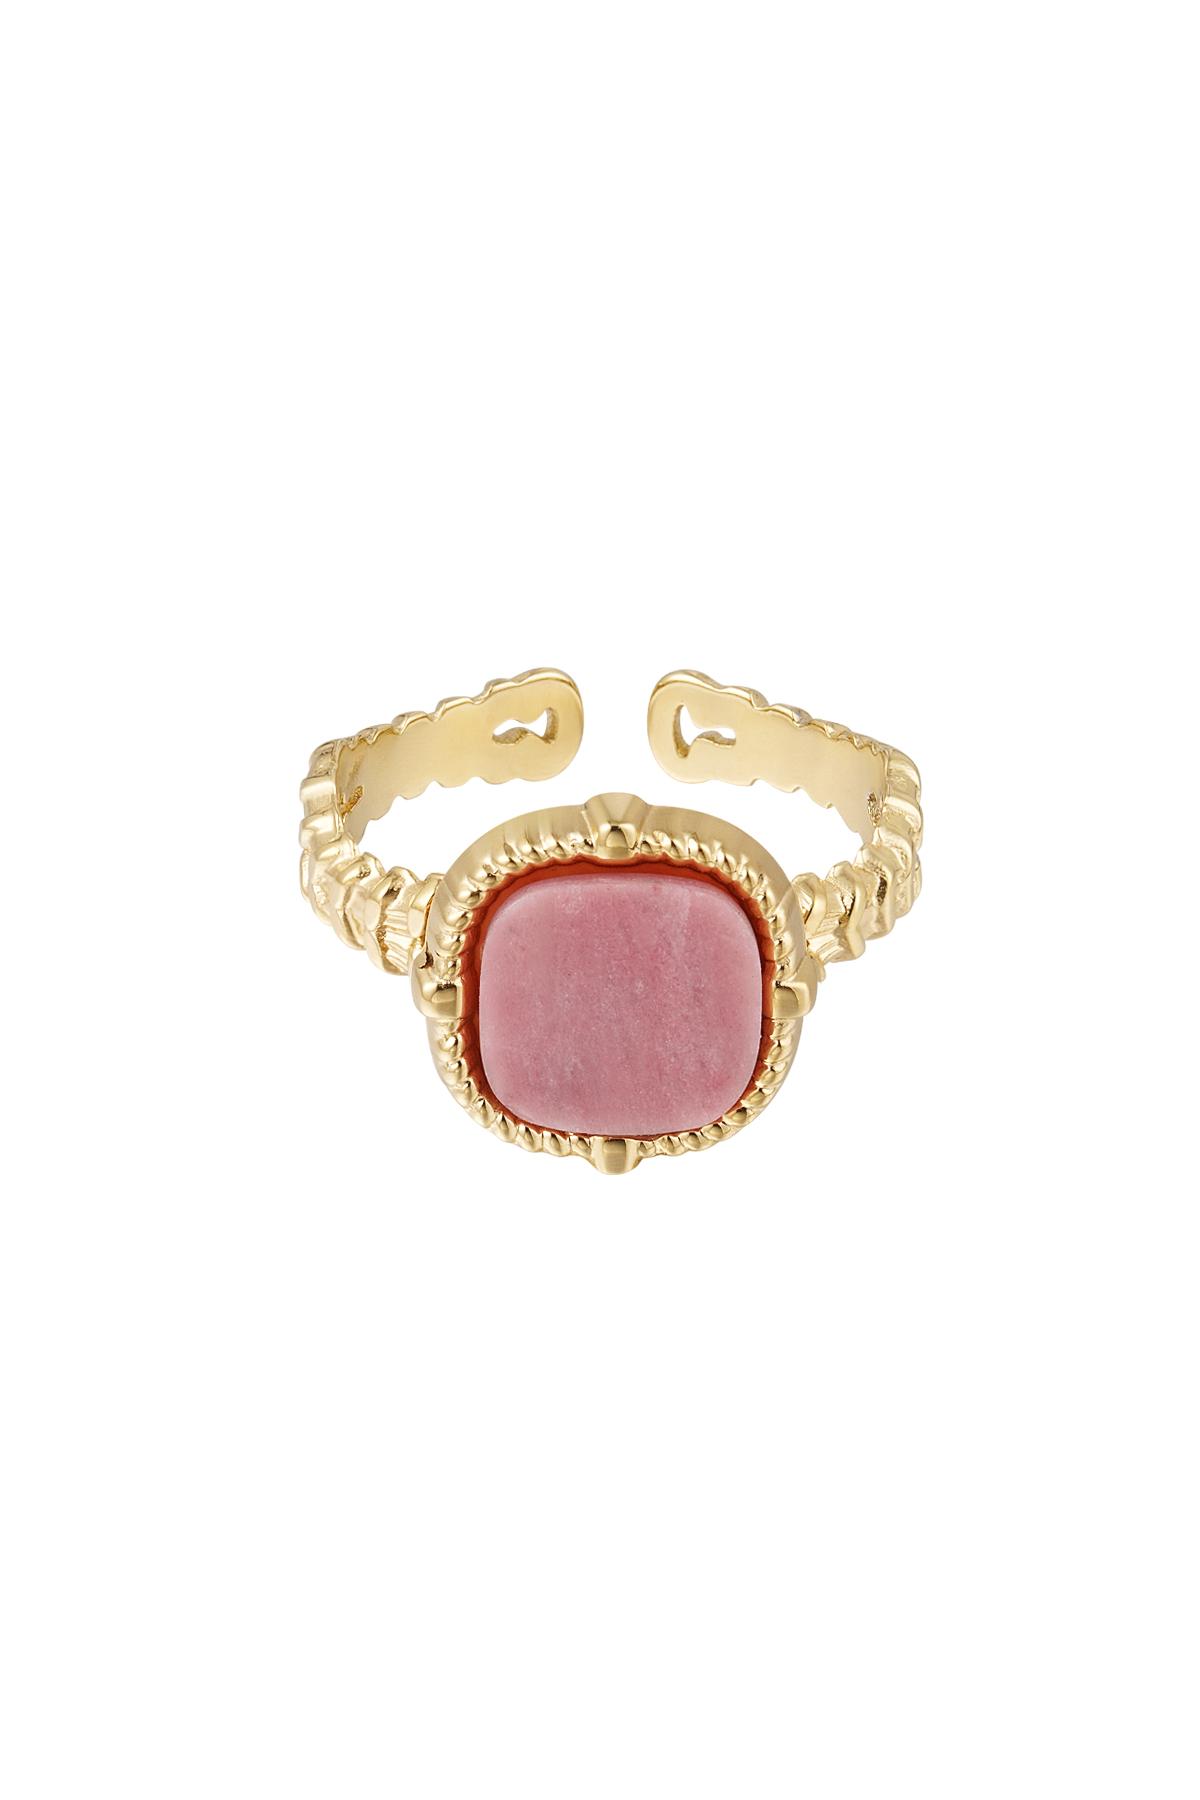 Bildiri yüzüğü zarif - pembe - Doğal taş koleksiyonu Pink & Gold Stainless Steel One size h5 